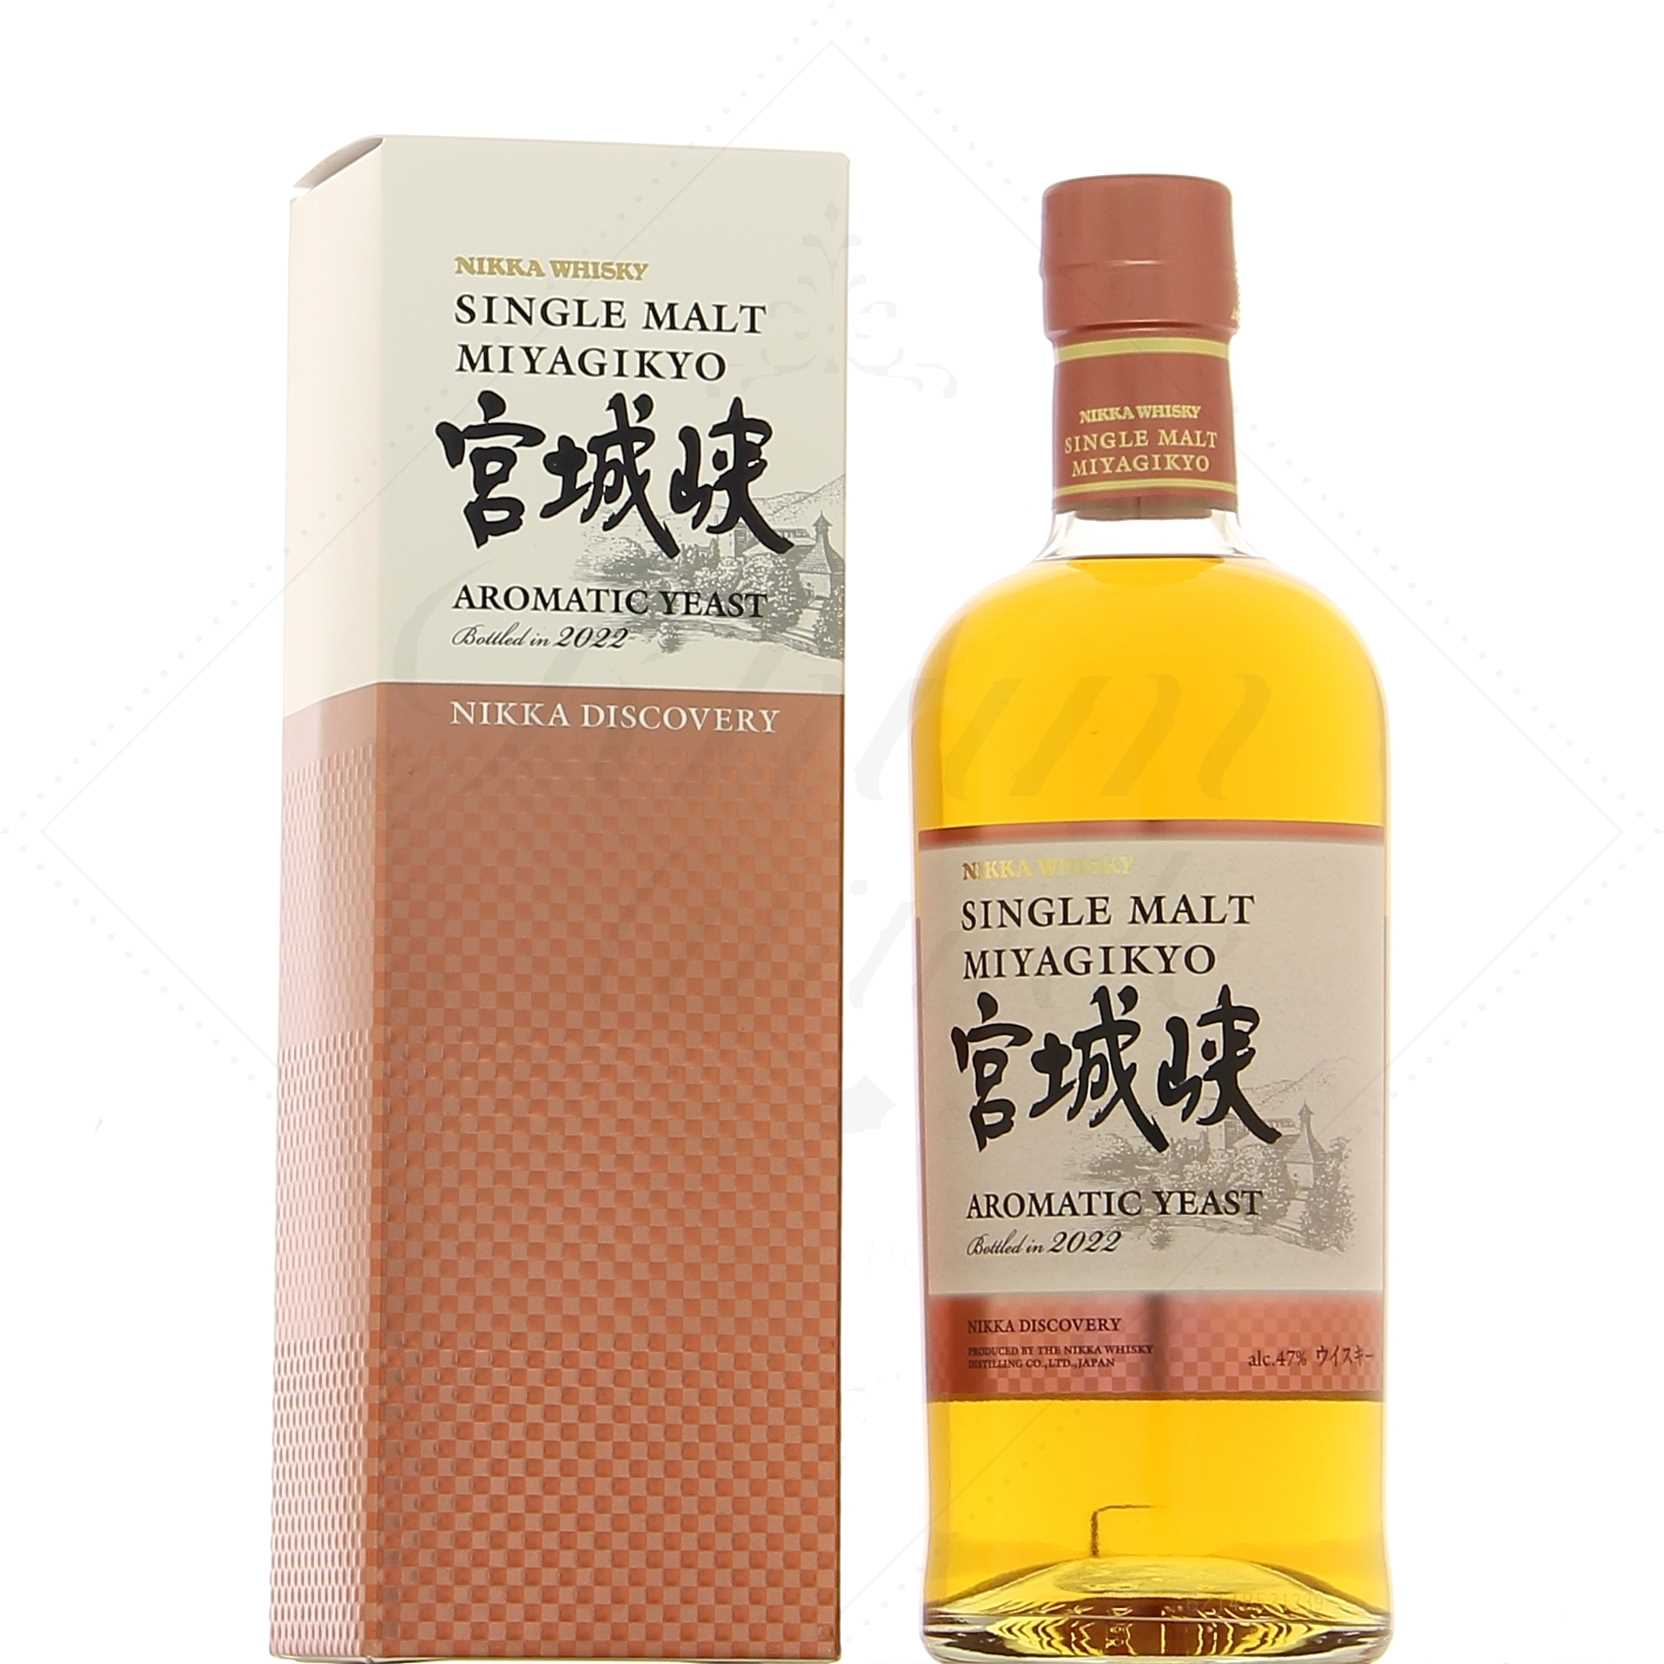 Nikka Days - Whisky du Japon en coffret cadeau avec deux verres